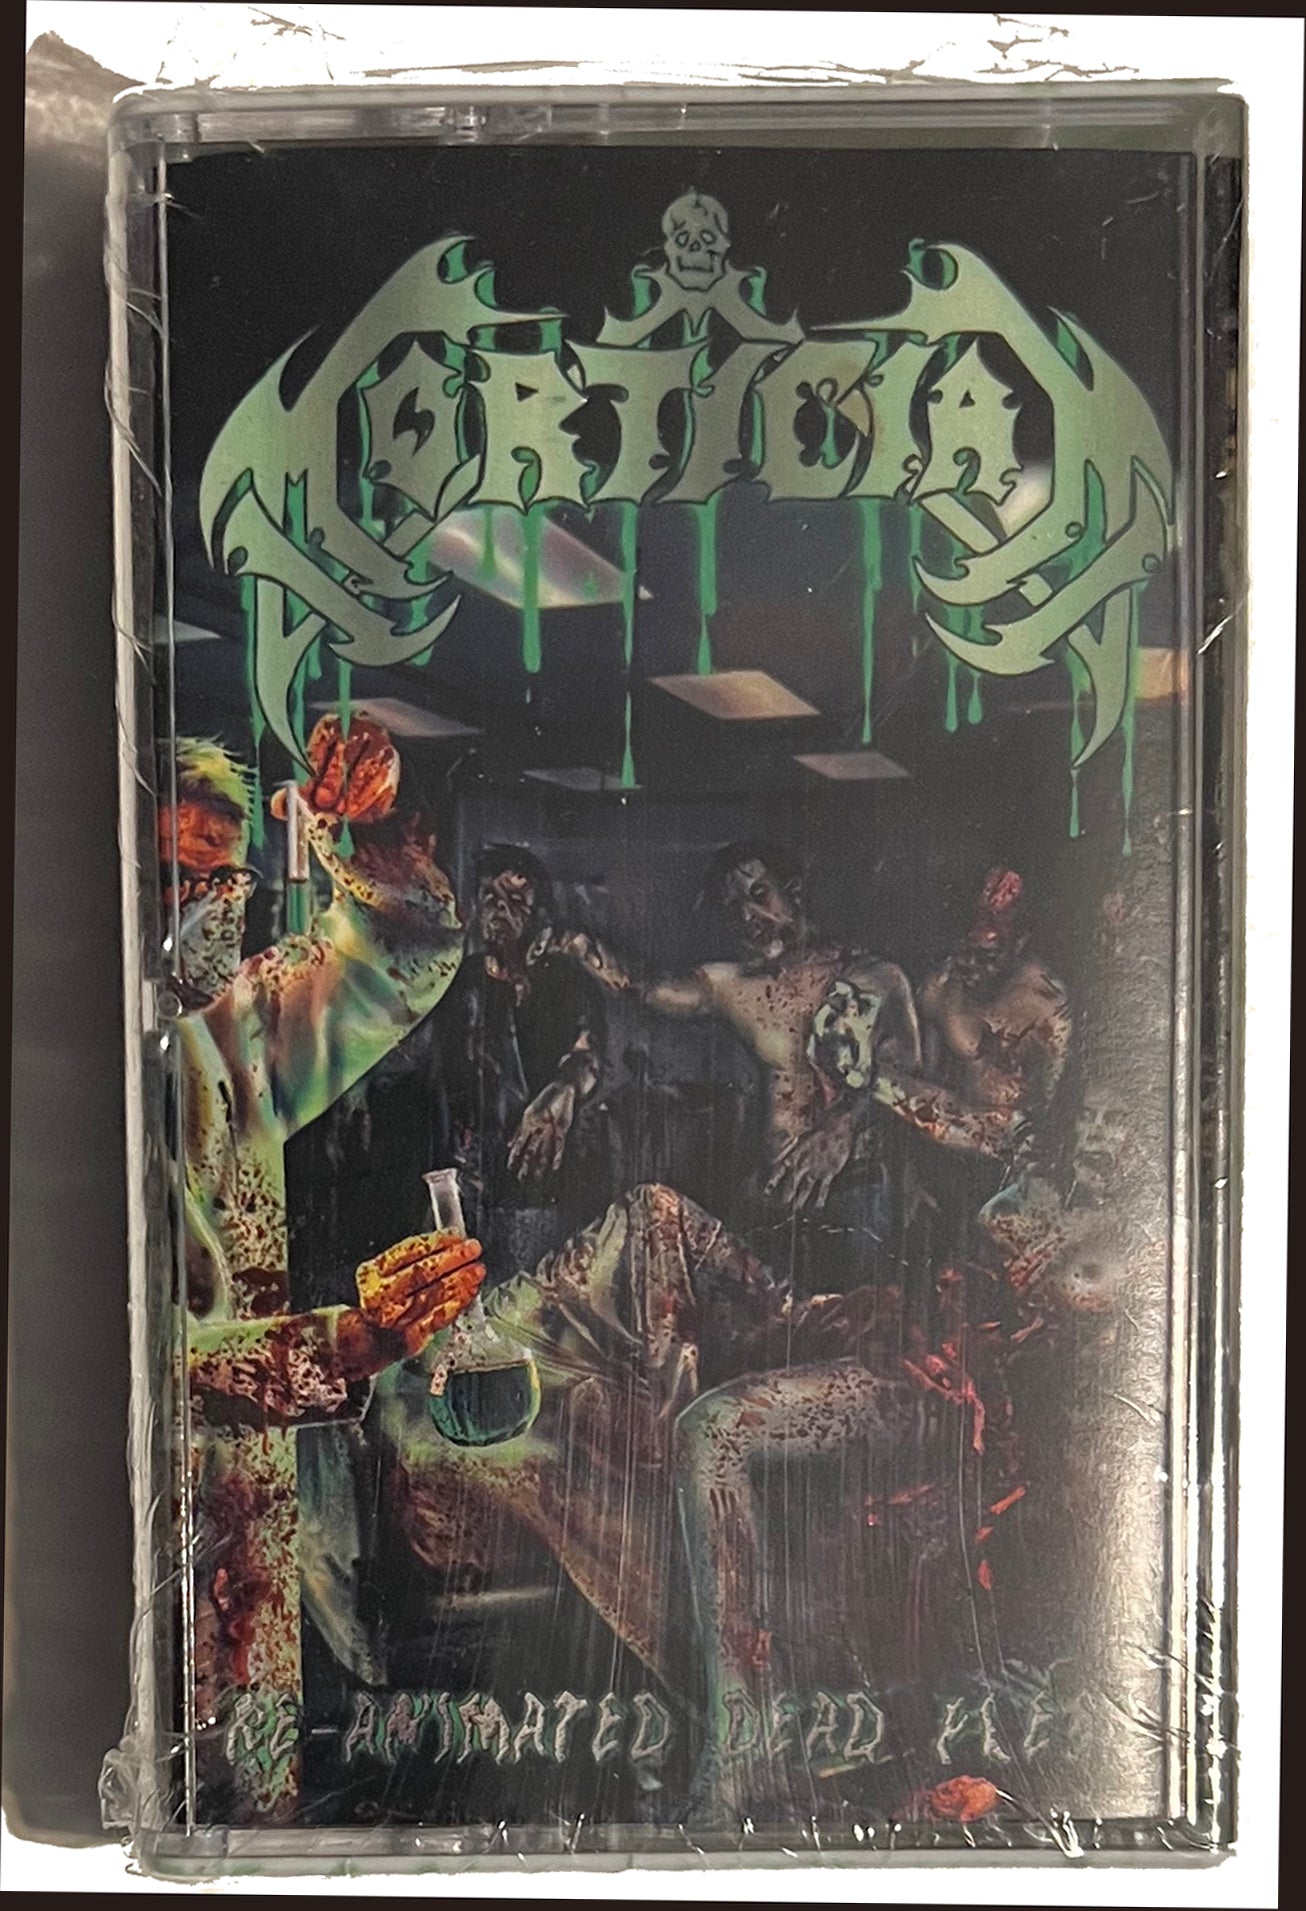  Mortician " Reanimated Dead Flesh " Cassette Tape